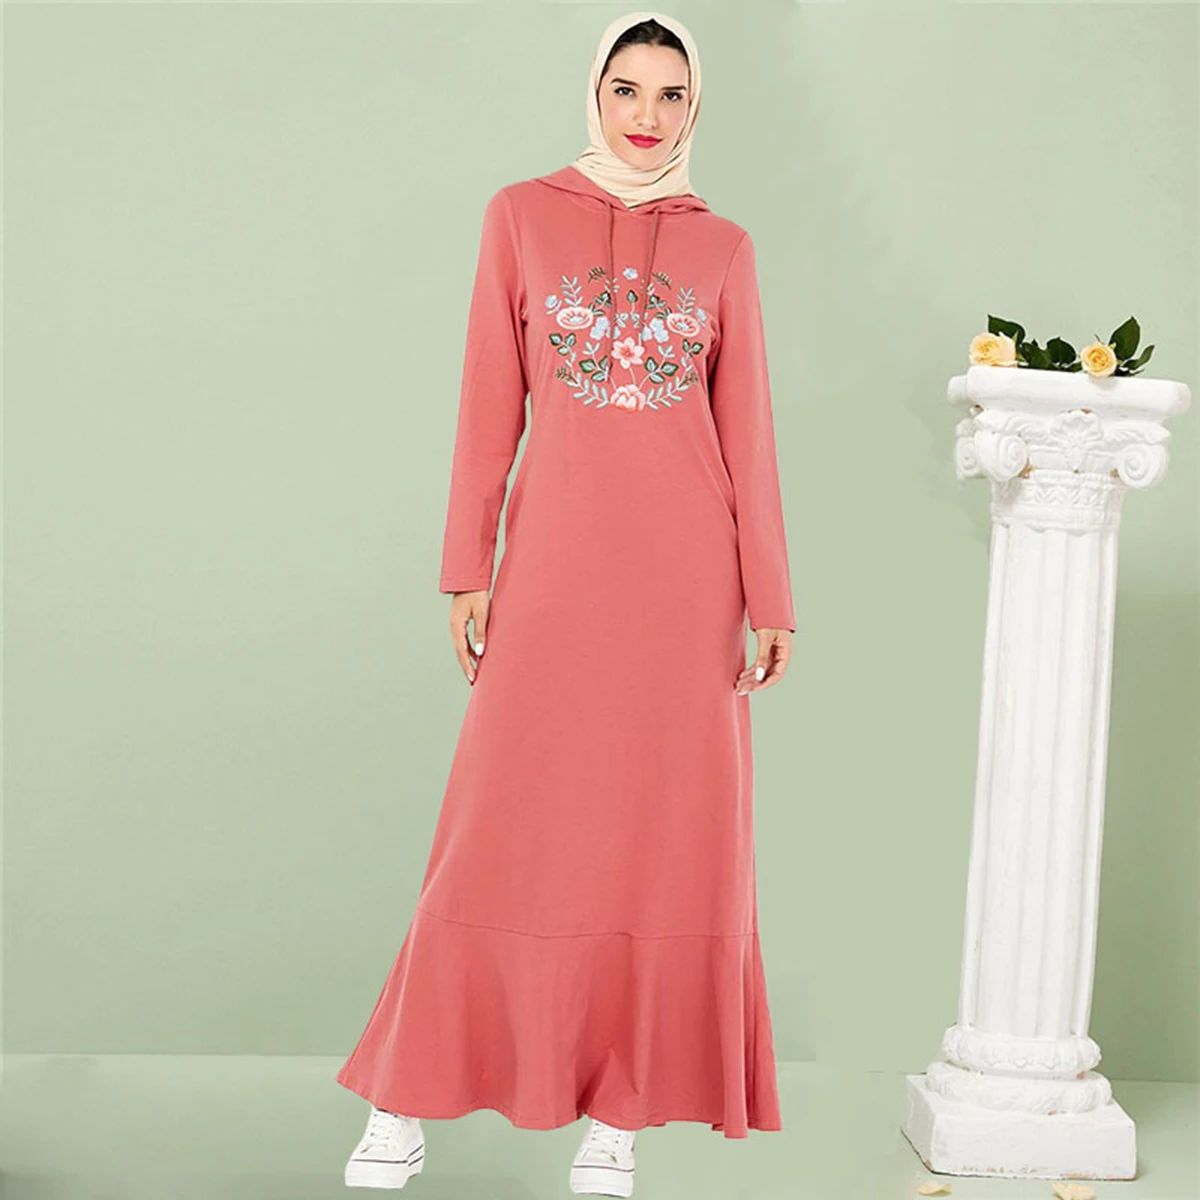 

Pirate Curiosity Embroidered Arabische Kleider Frauen Dubai Turkey Muslim Fashion Dress Casual Hooded Ruffle Hem Vestidos